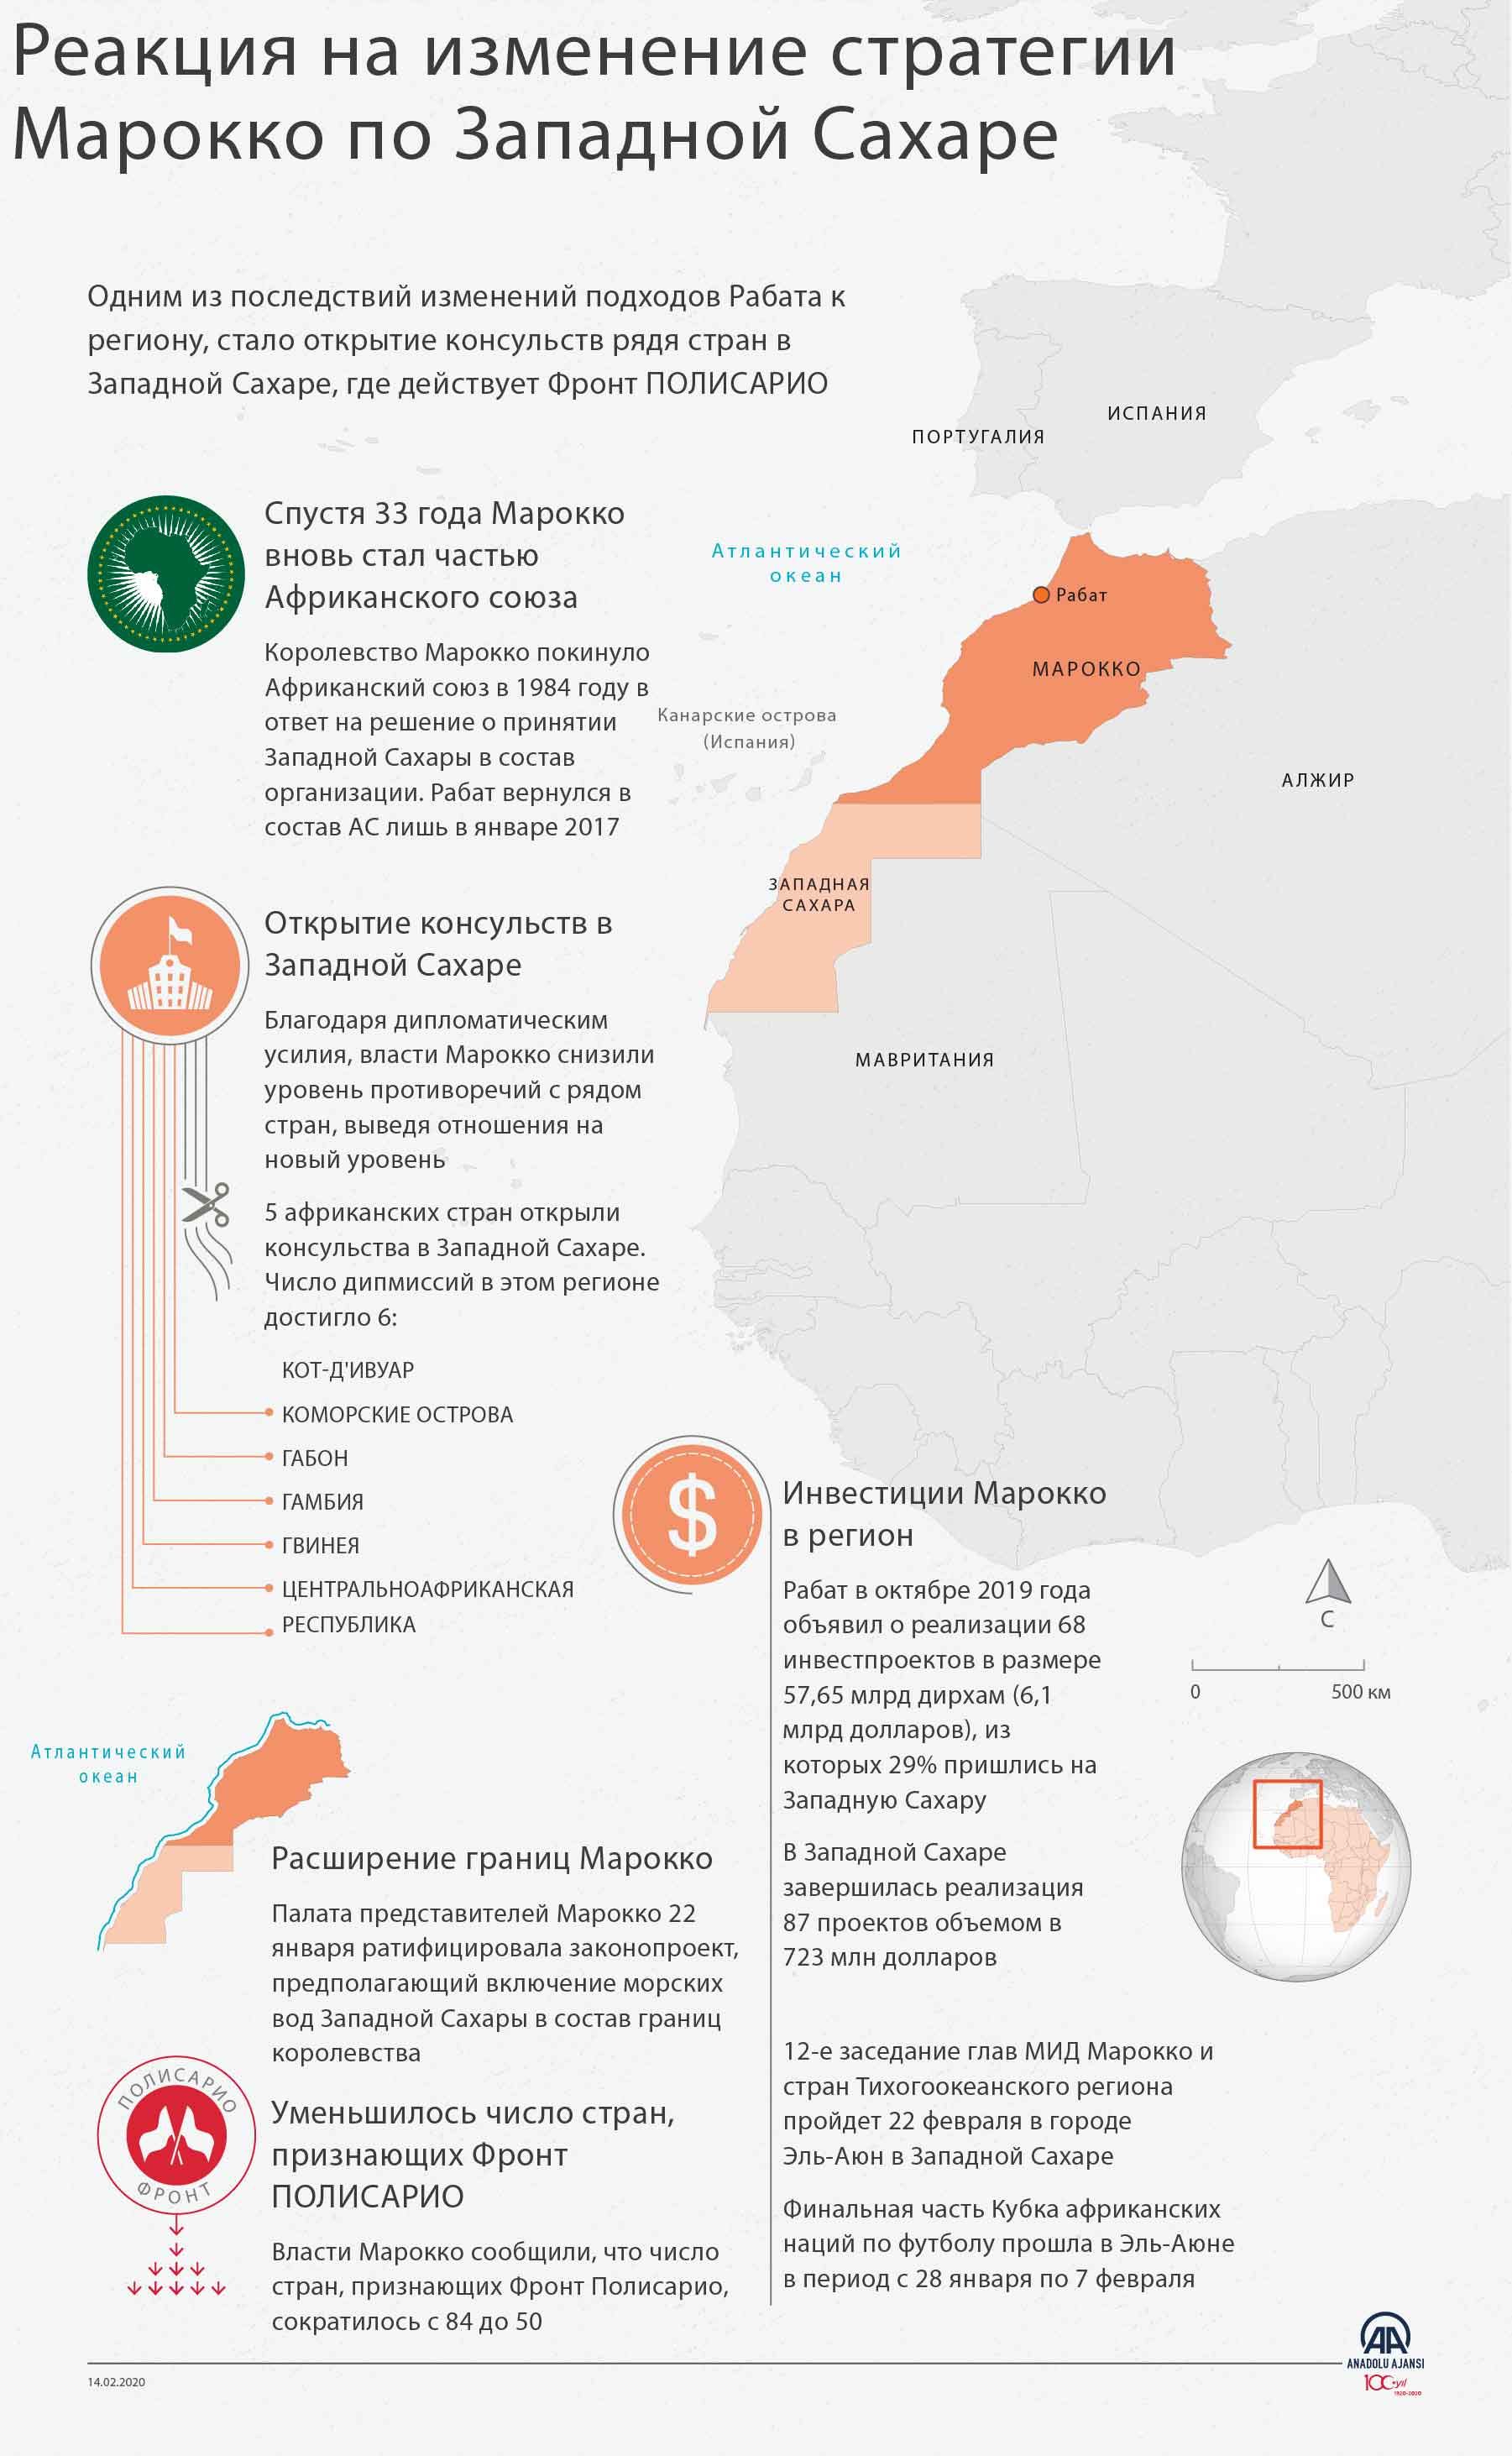 Реакция на изменение стратегии Марокко по Западной Сахаре